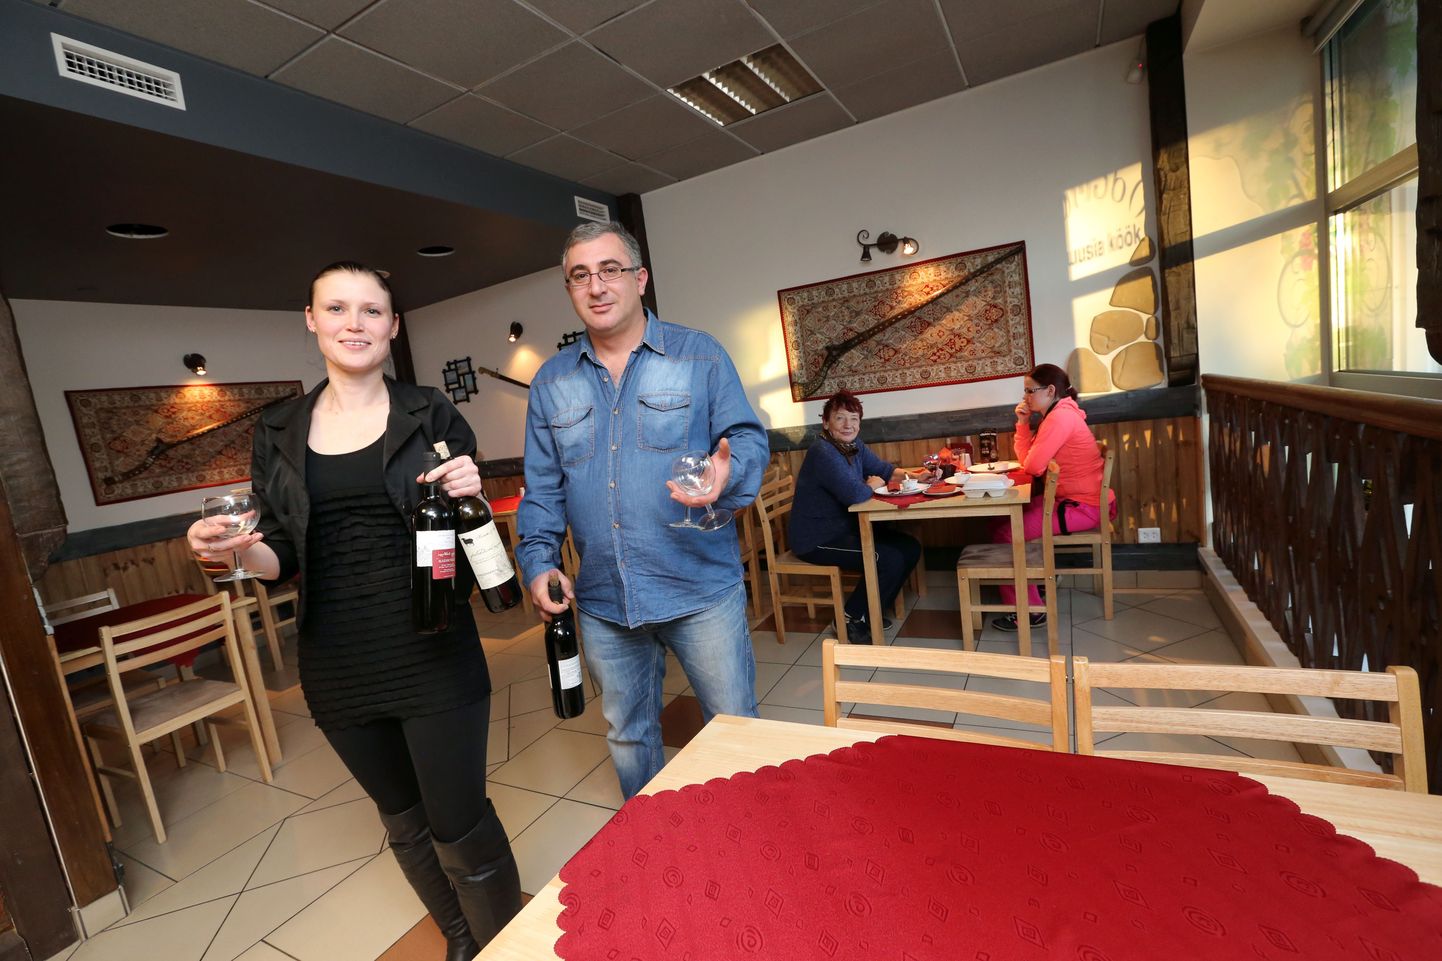 Gruusia kohviku Marani omanik Iason Adamashvili ja mänedžer Nadežda Priz ei ole varem Tartus ettevõtlusega tegelenud. Lisaks kohvikule on neil veel plaanis avada Tartu kesklinnas Gruusia veinikelder.